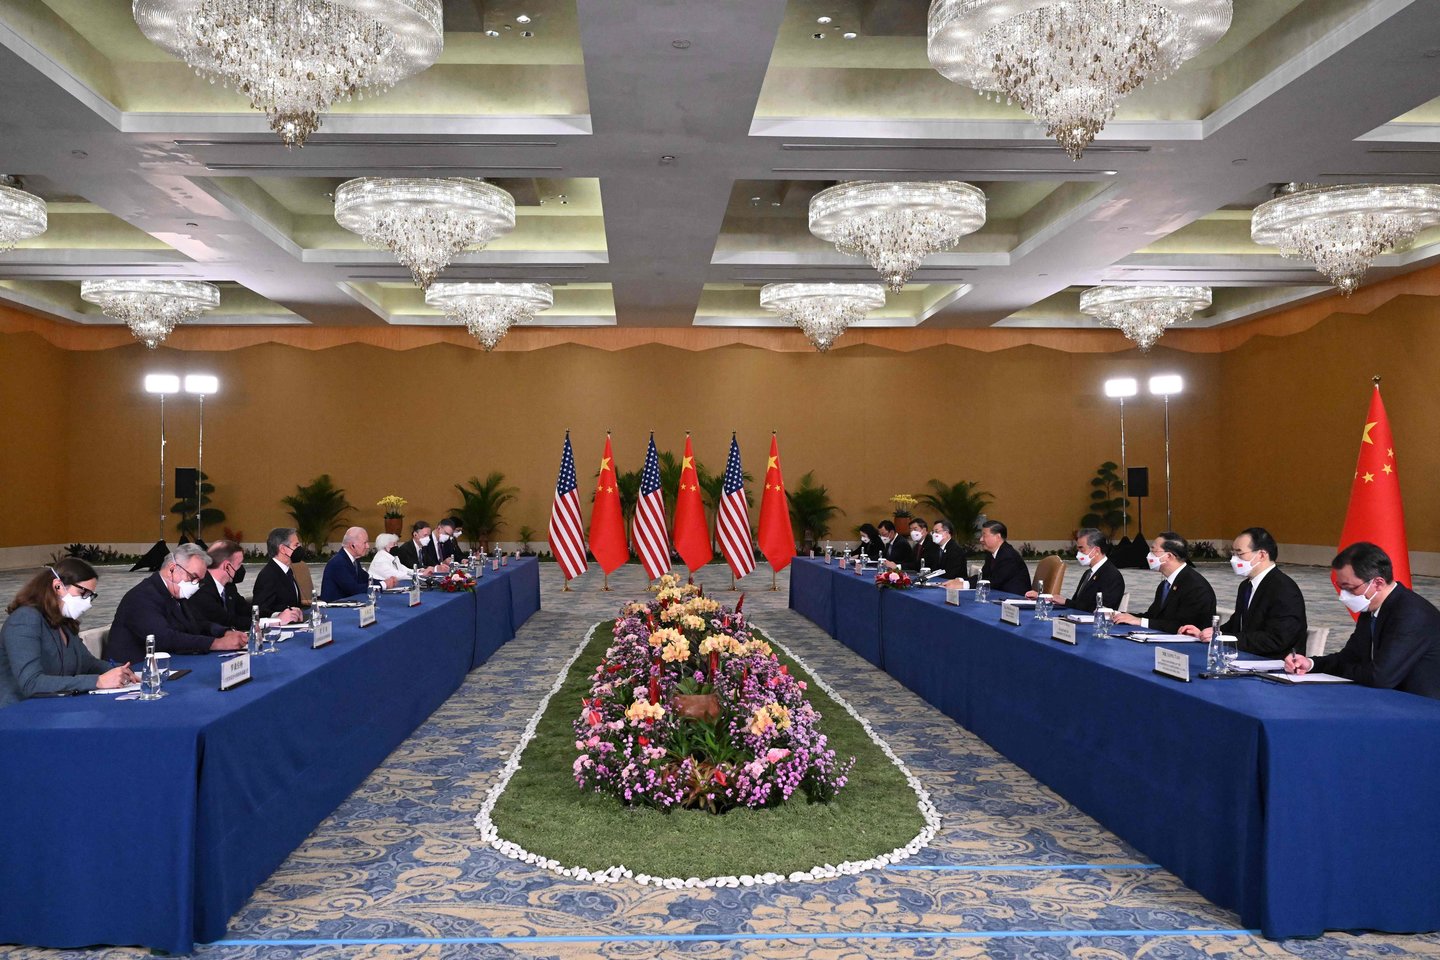 ​Kinijos delegacijos narys pirmadienį Balyje vykusiame prezidentų Xi Jinpingo ir Joe Bideno susitikime trūktelėjo ir pastūmė JAV žurnalistę, mėginusią paklausti apie žmogaus teises.<br>AFP/Scanpix nuotr.